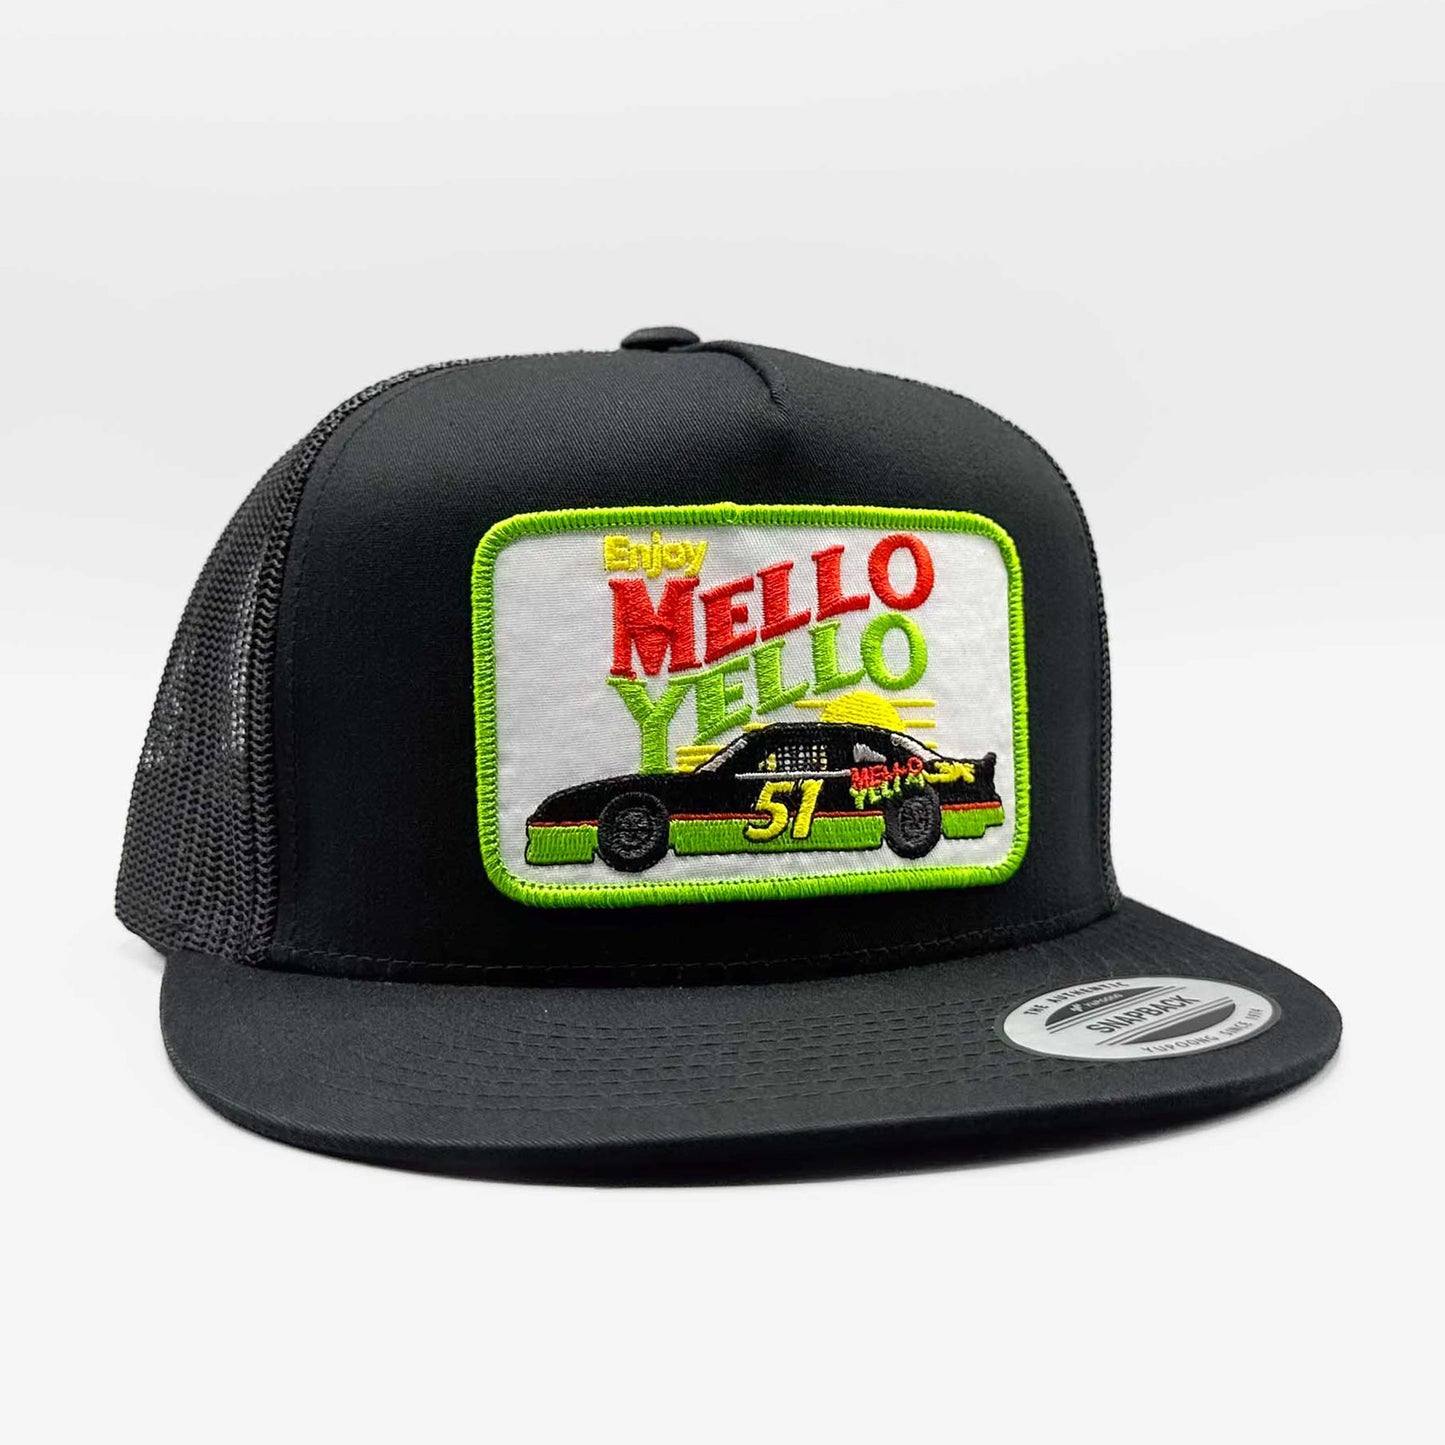 Cole Trickle Mello Yello Racing Trucker Hat